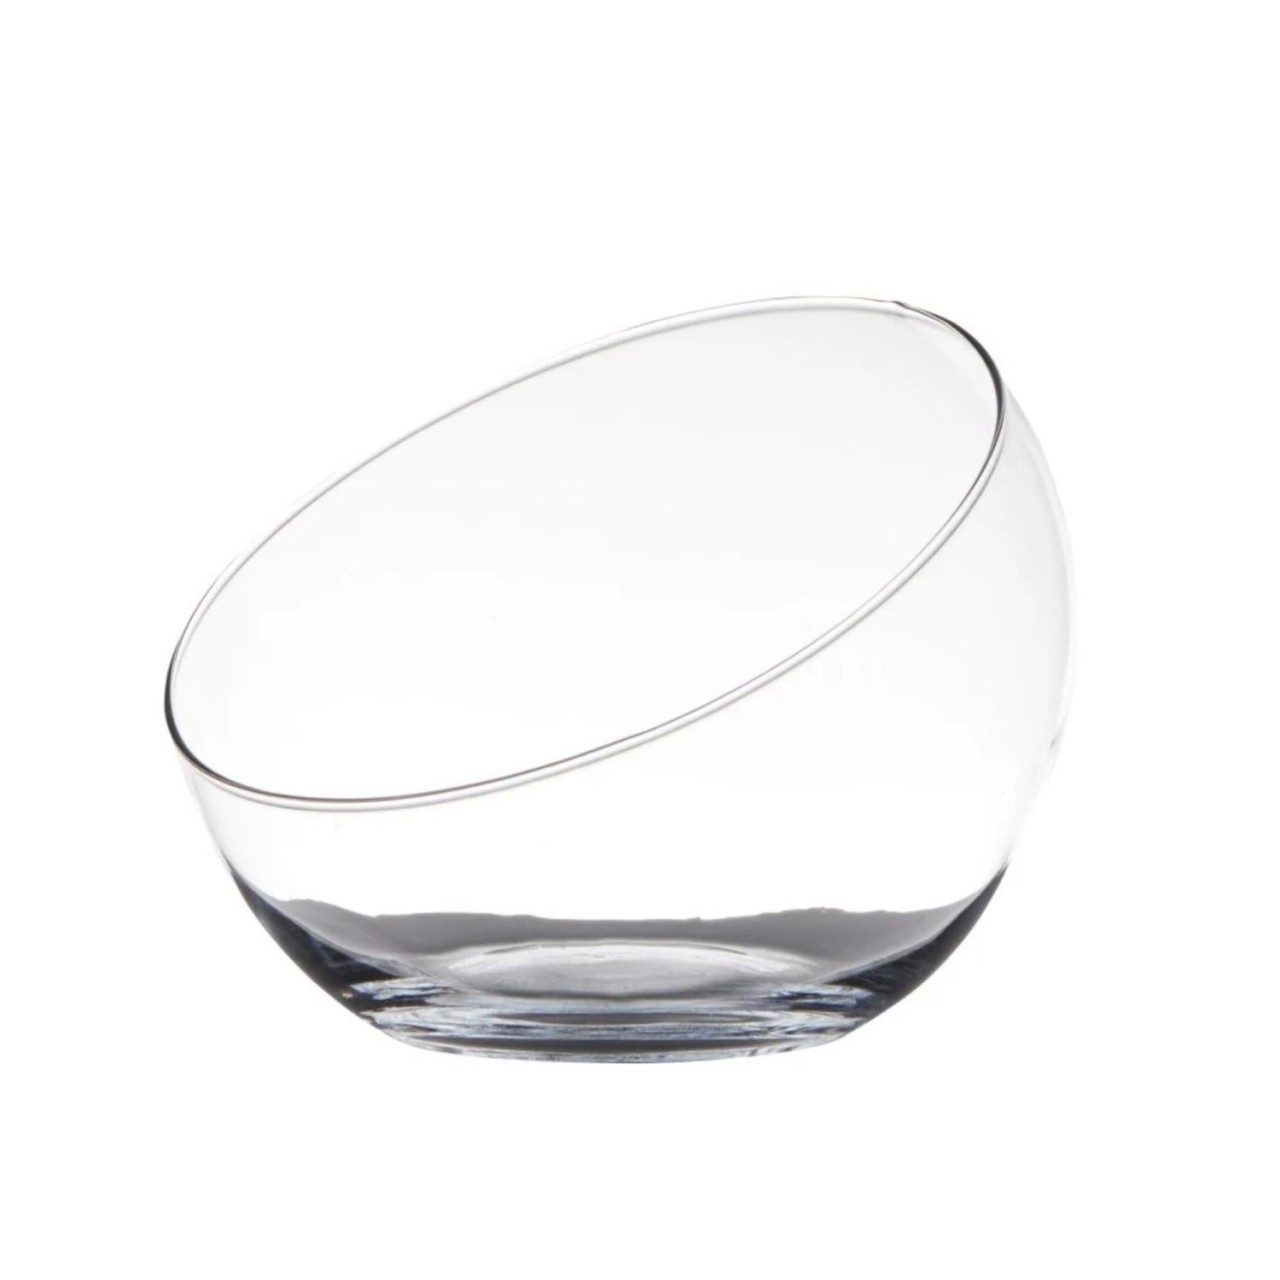 Hakbijl Glass Dekoschale RECTANGULAR, Transparent H:15cm D:19cm Glas